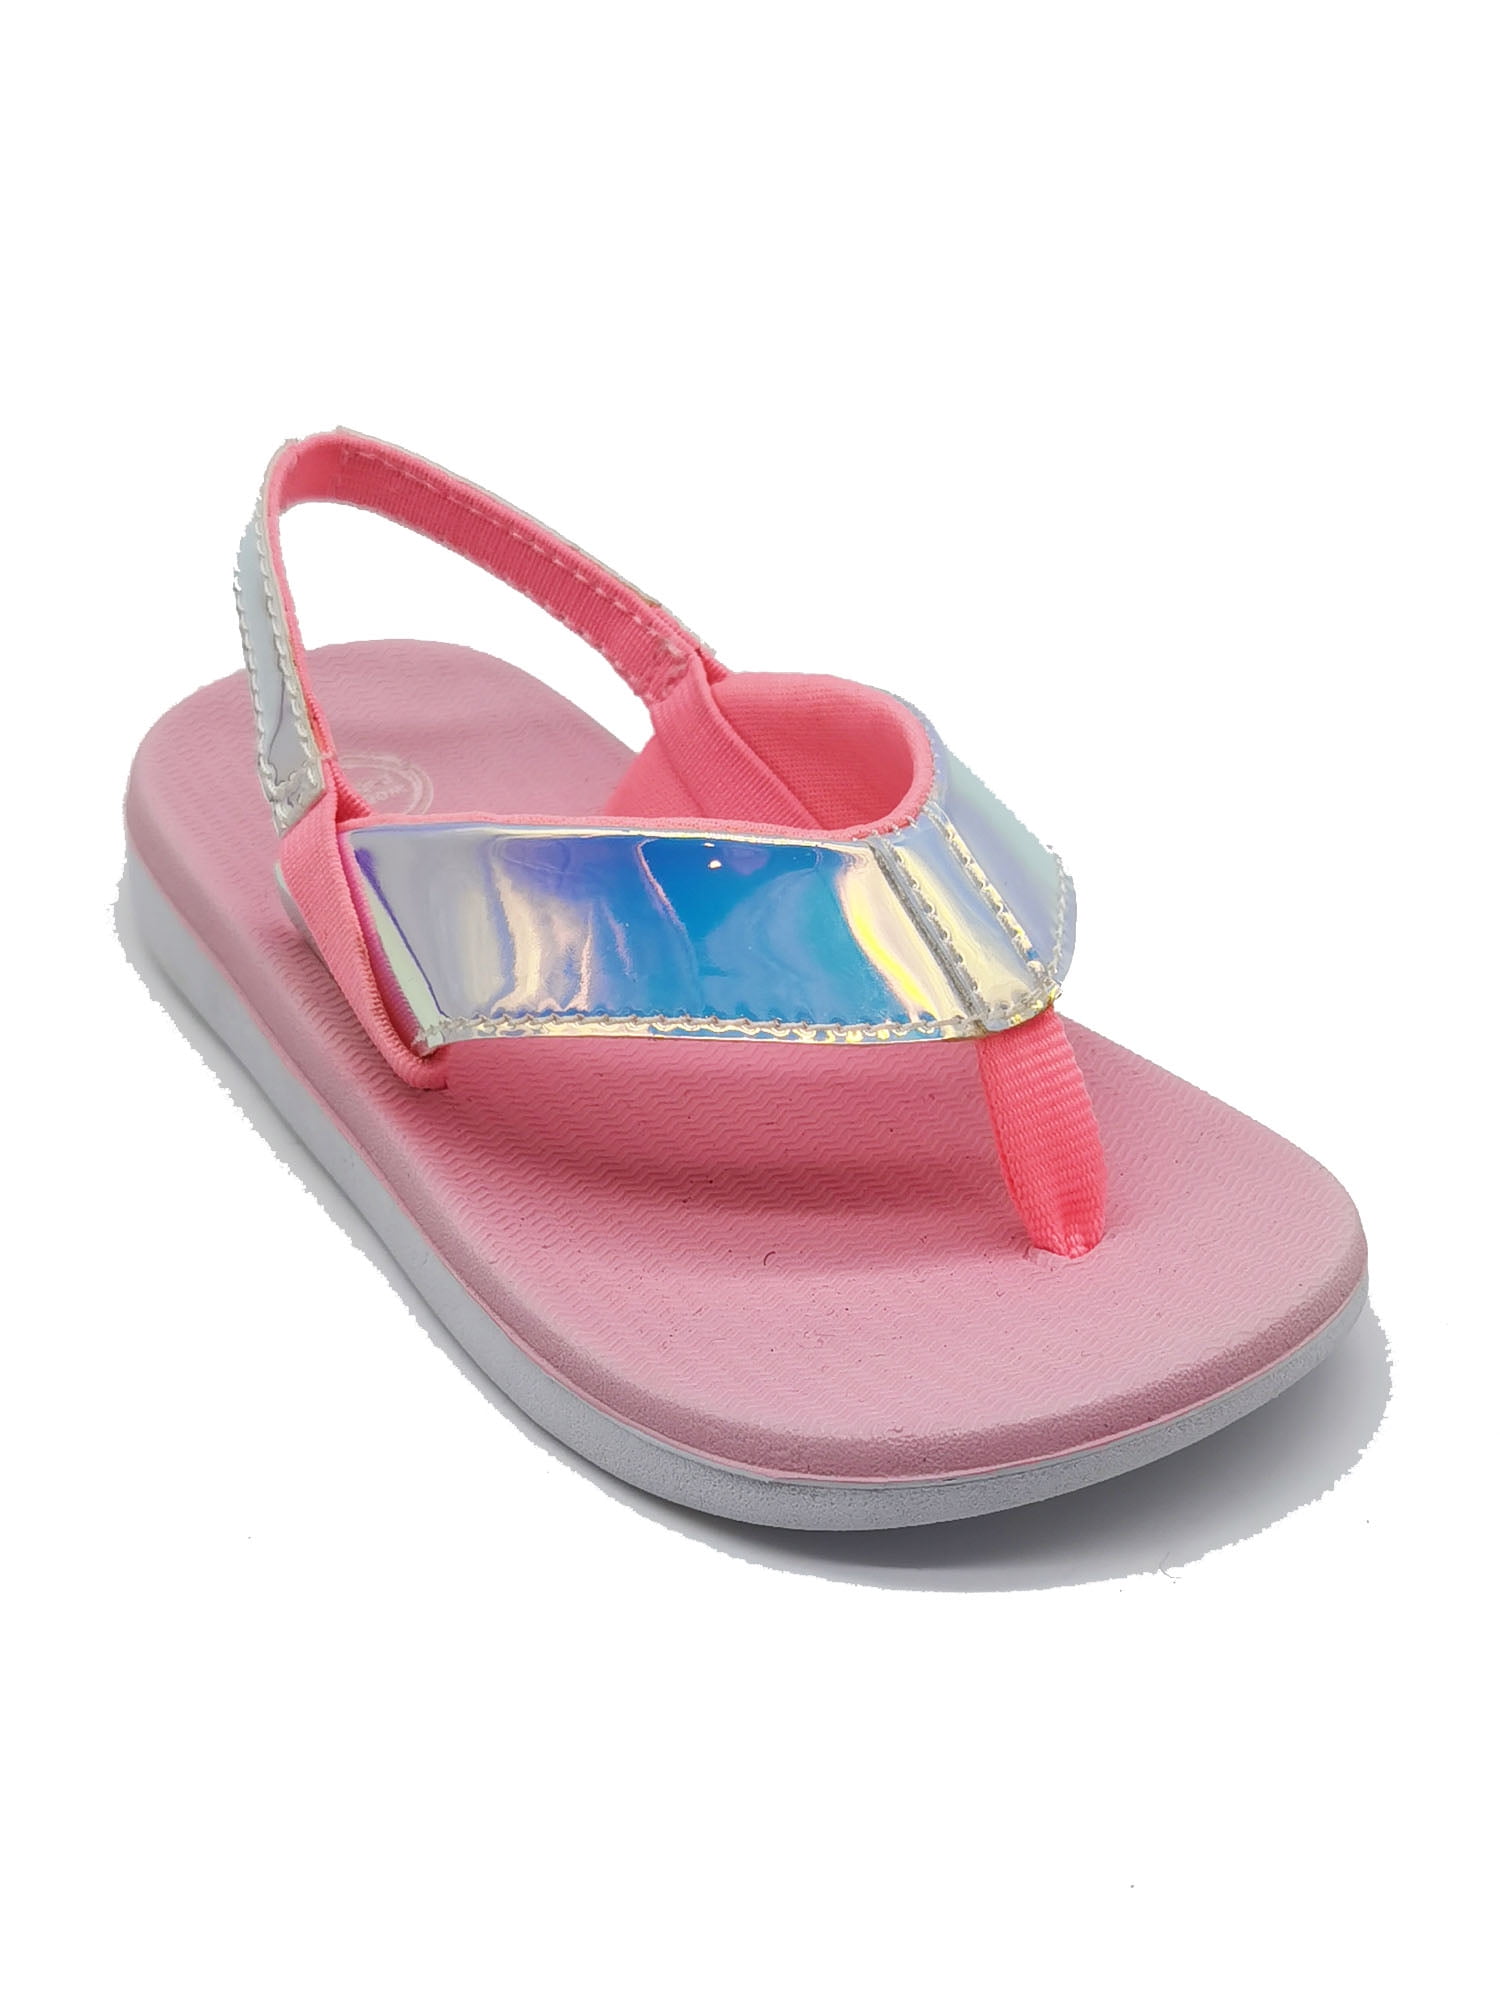 Wonder Nation Toddler Girls Flower Wedge Beach Sandals-Flip Flops Size 9/10 